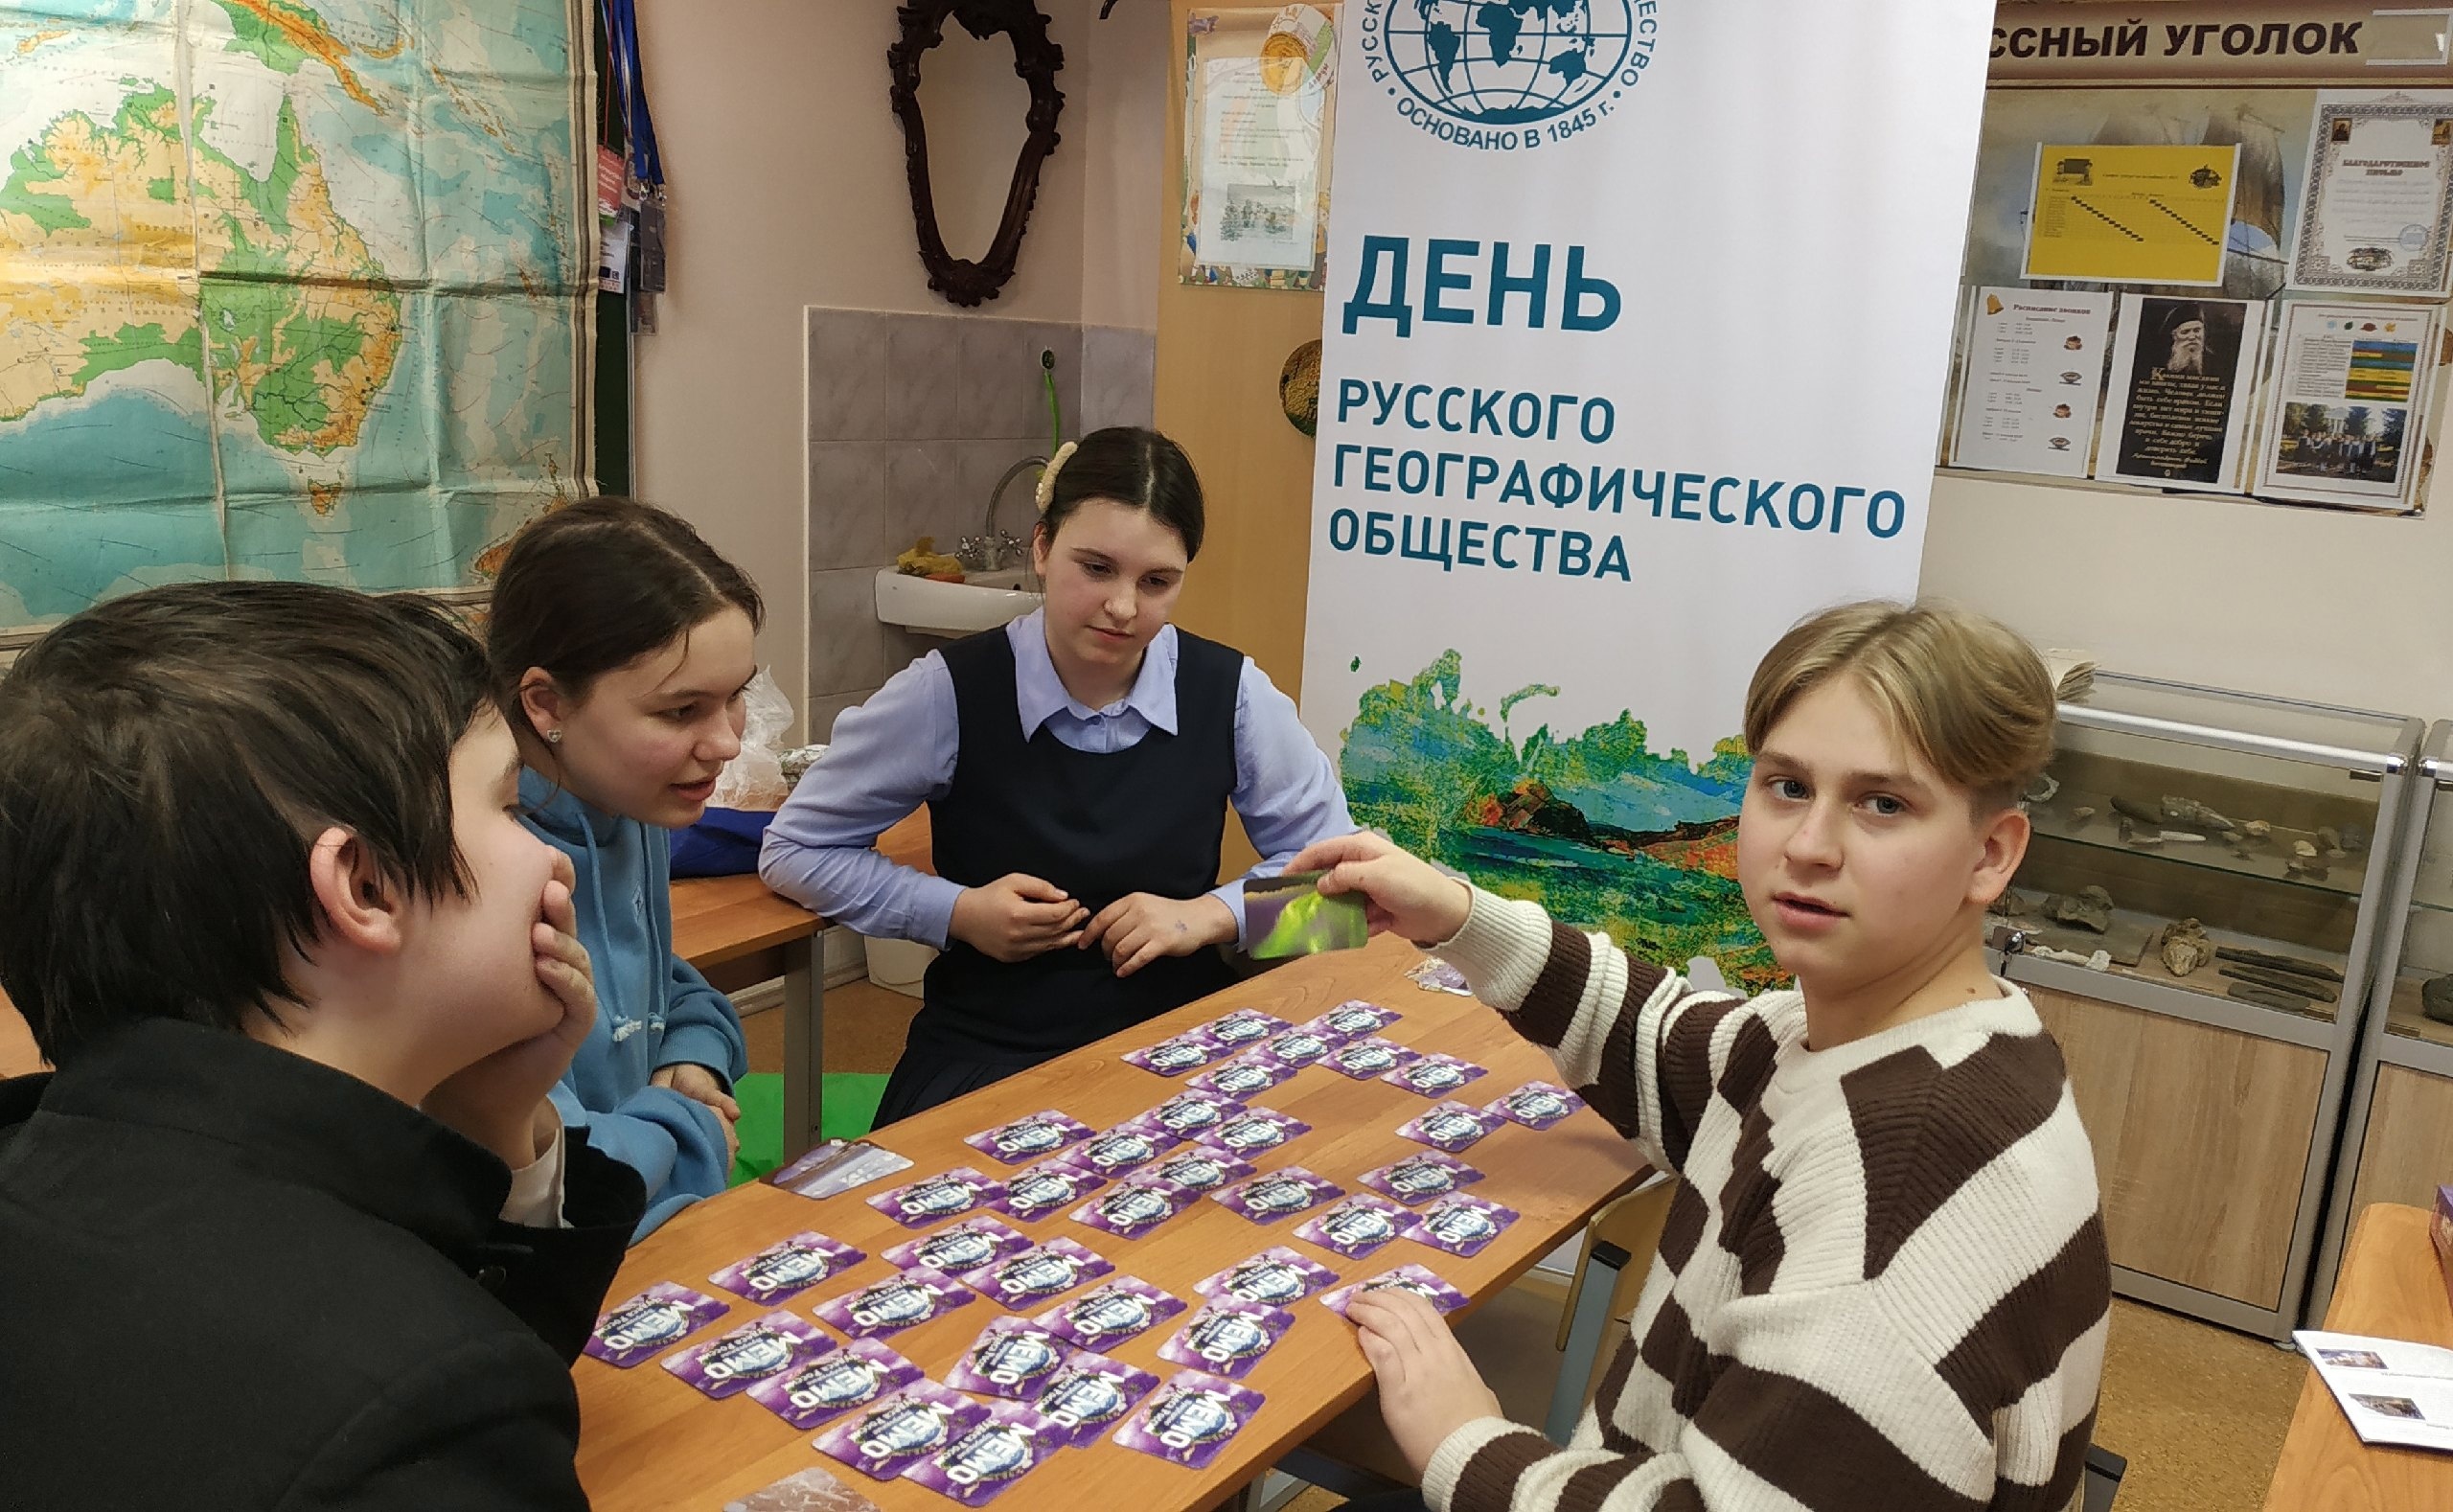 Представители Молодежного клуба РГО «Плесково» организовали встречу активистов